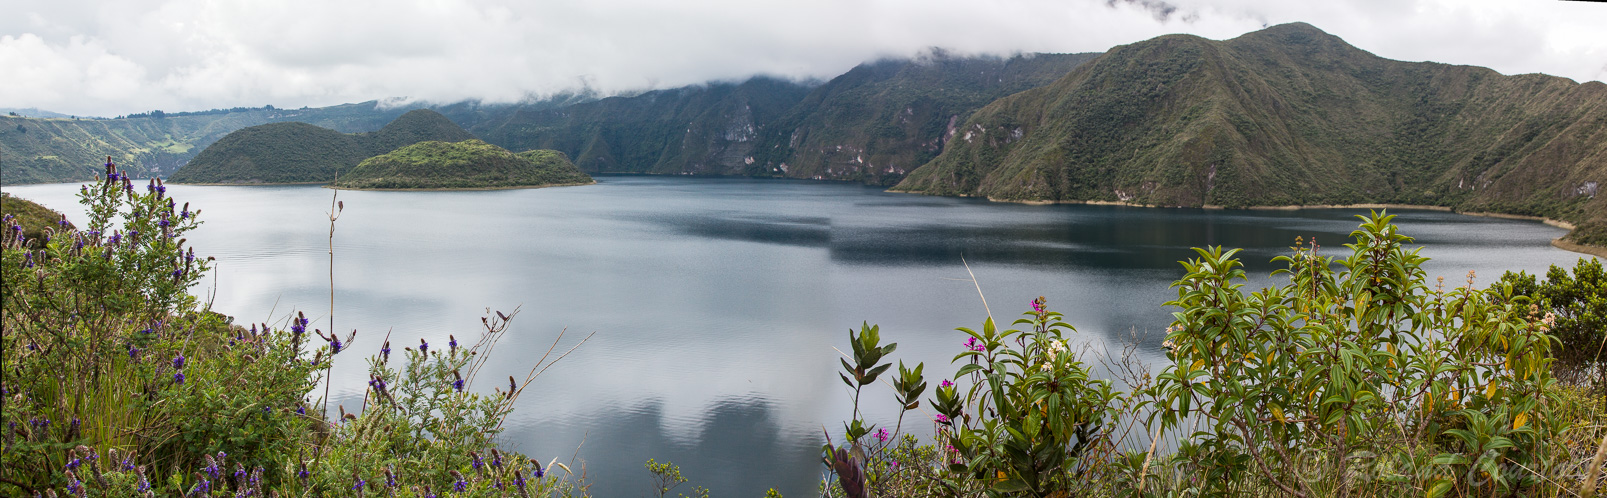 Panorama sur le lac de Cuicocha, Il s'agit d'un cratère de volcan à 2.400 m. d'altitude.